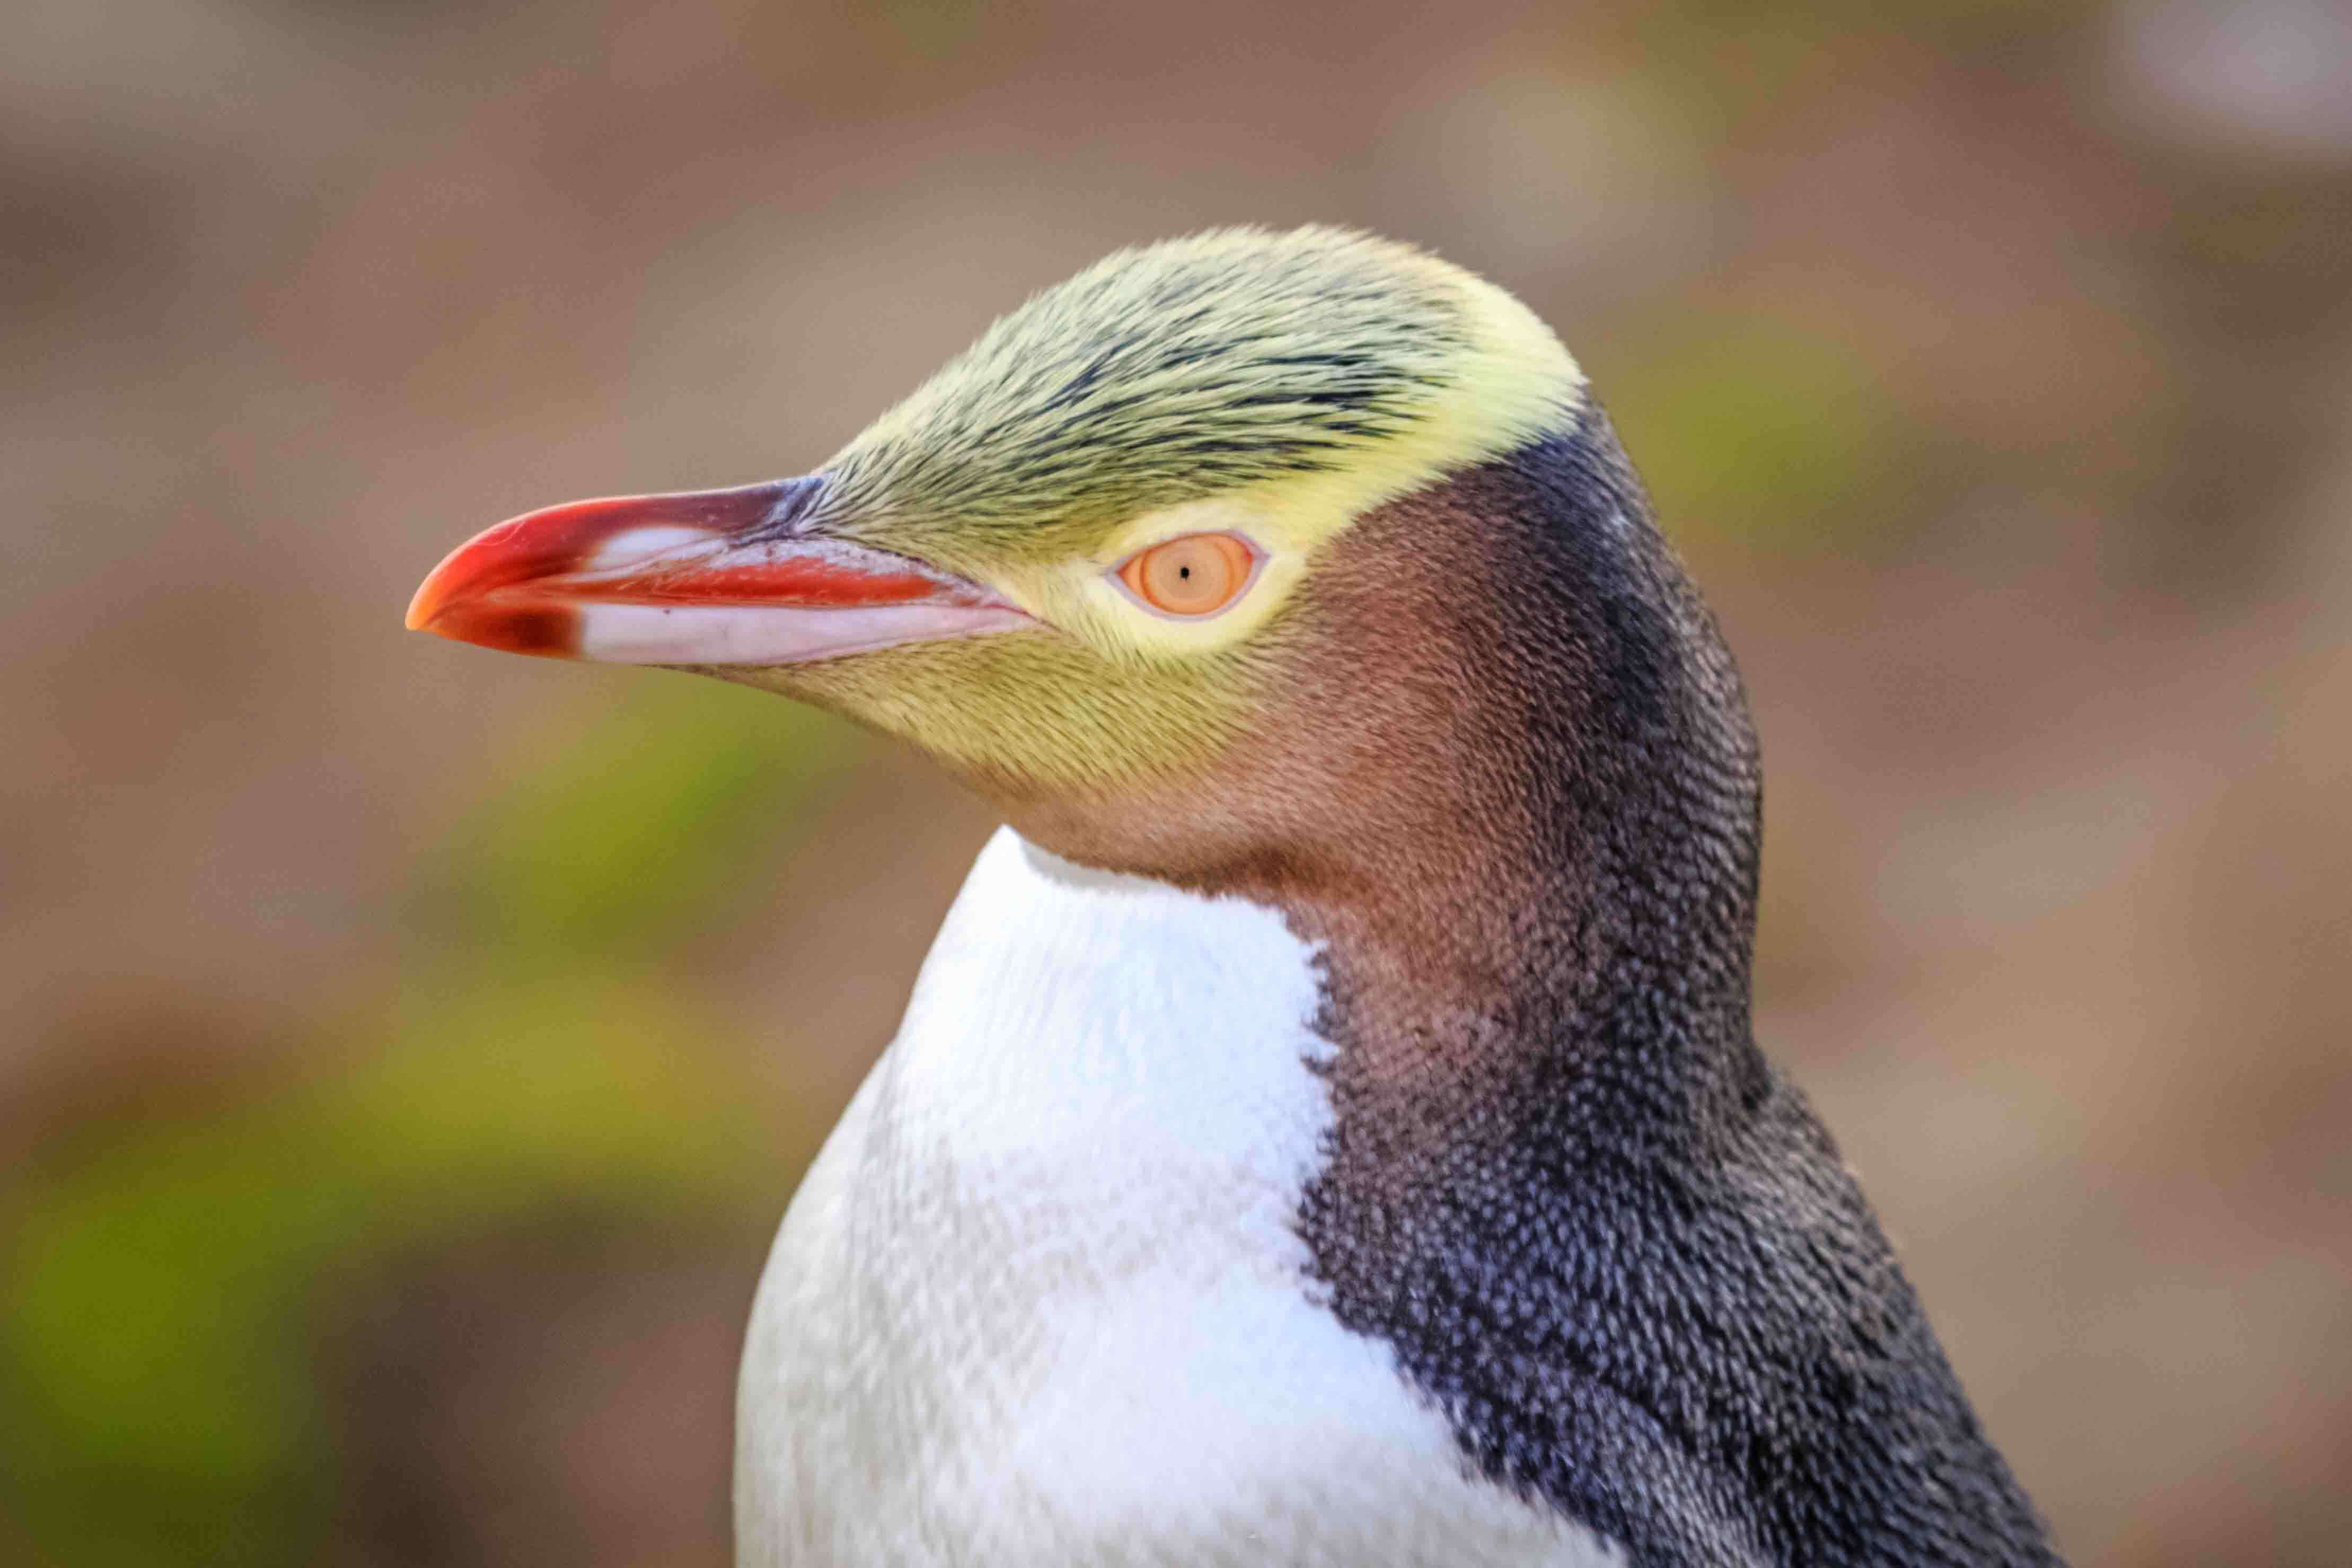 volto e becco del pinguino dagli occhi gialli